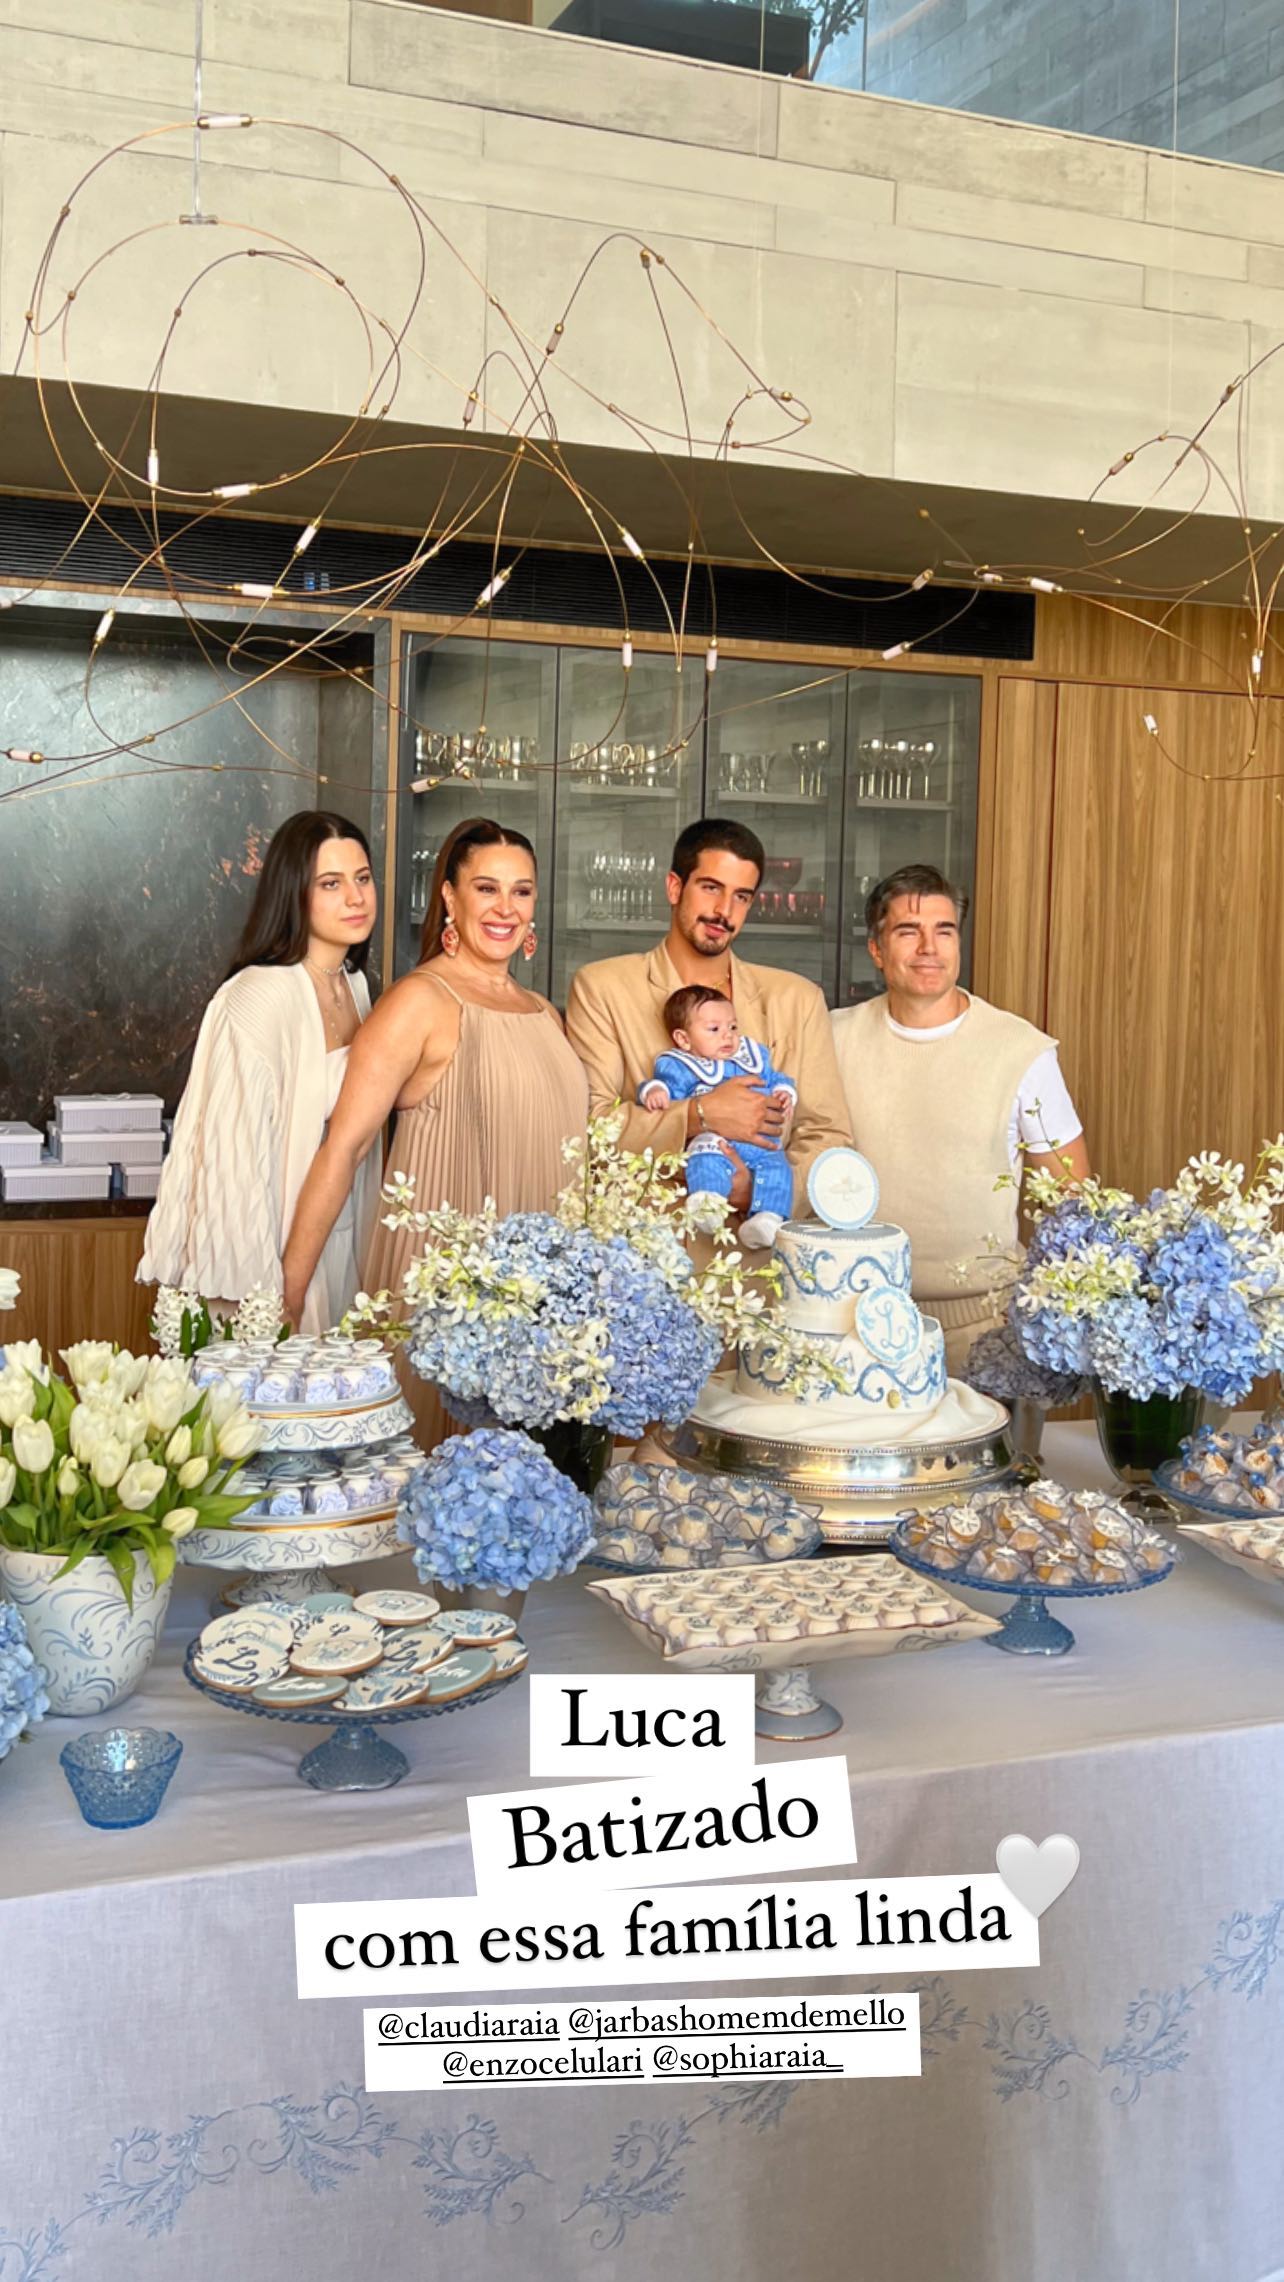 Claudia Raia reúne família em luxuosa cerimônia de batizado do caçula, Luca: "Amo"